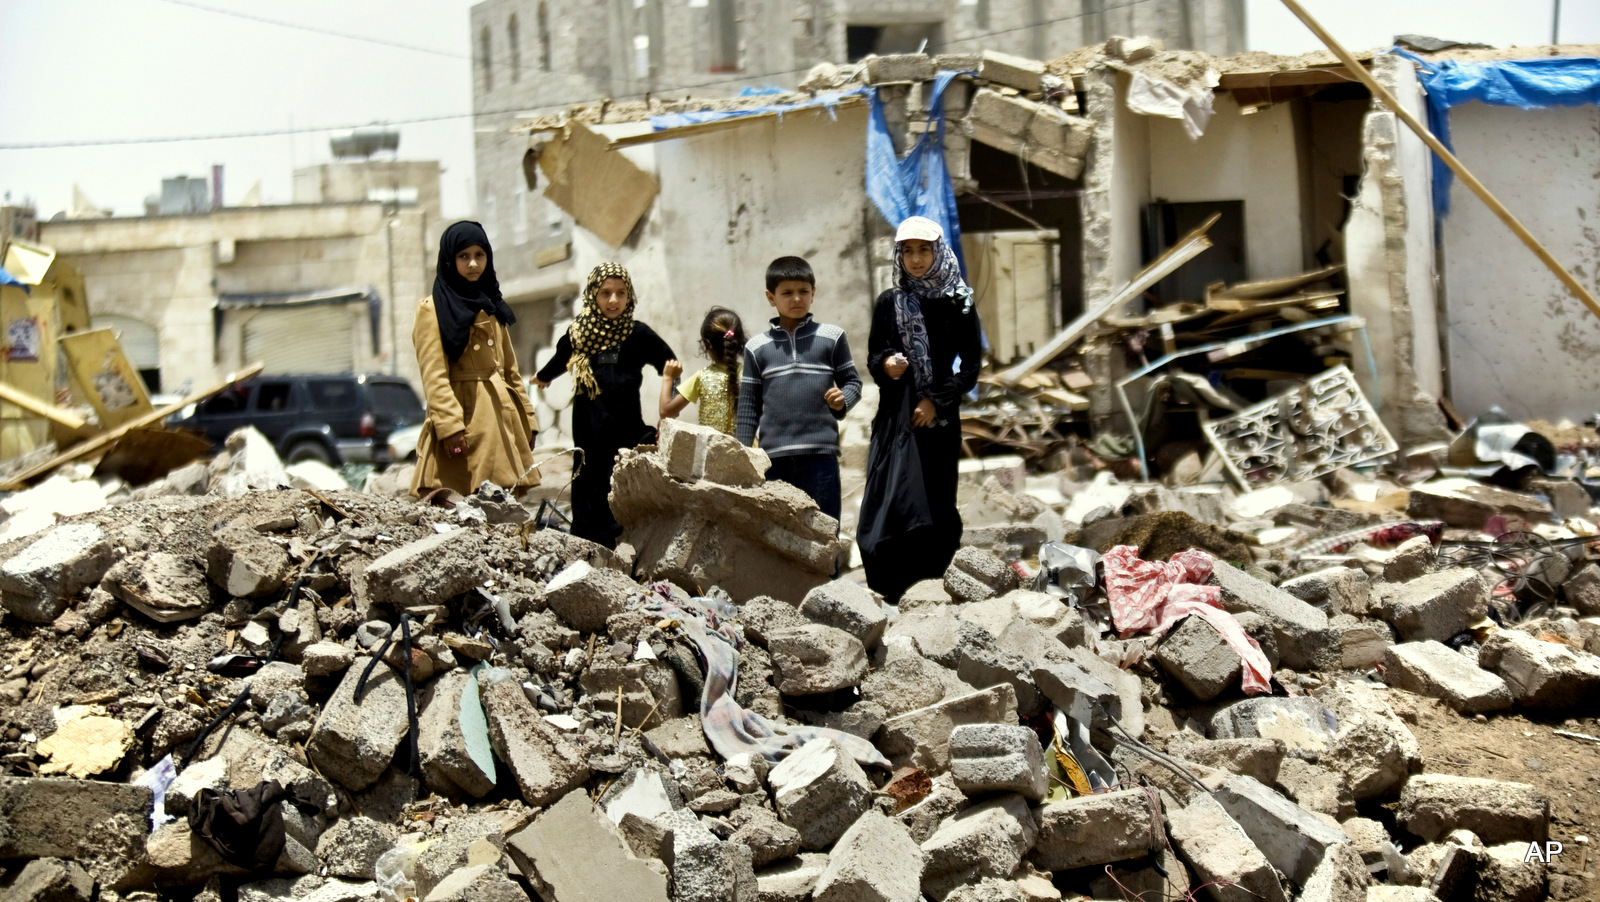 تقارير غربية تكشف: "الكوليرا في اليمن نتيجة هجوم بيولوجي"